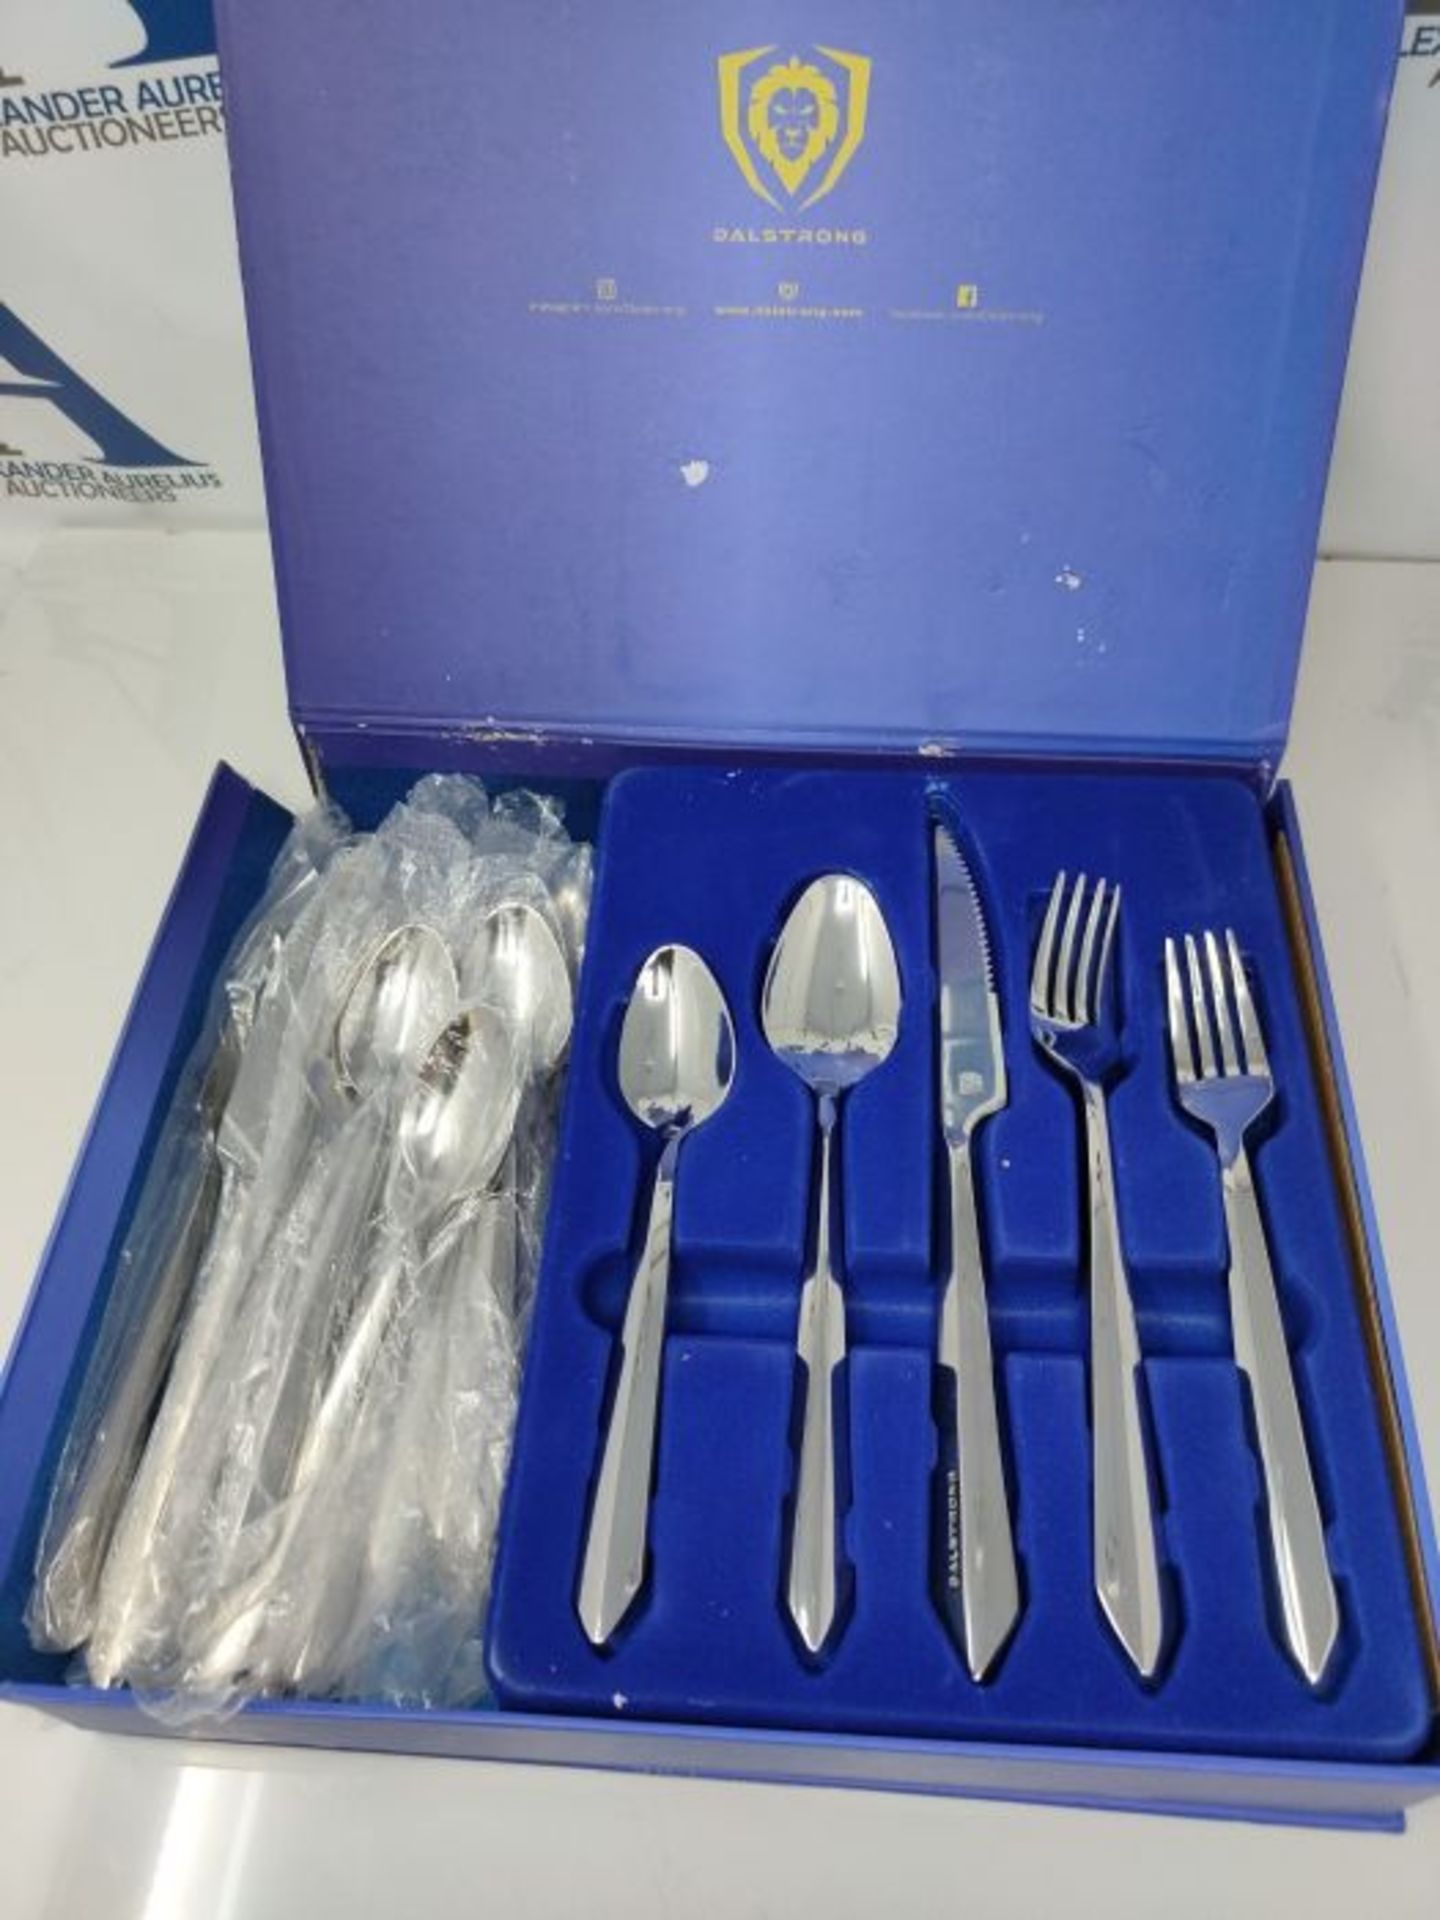 DALSTRONG - 5 Piece Silver Flatware Set - Dinner Knife, Dinner Fork, Dinner Spoon, Des - Image 3 of 3